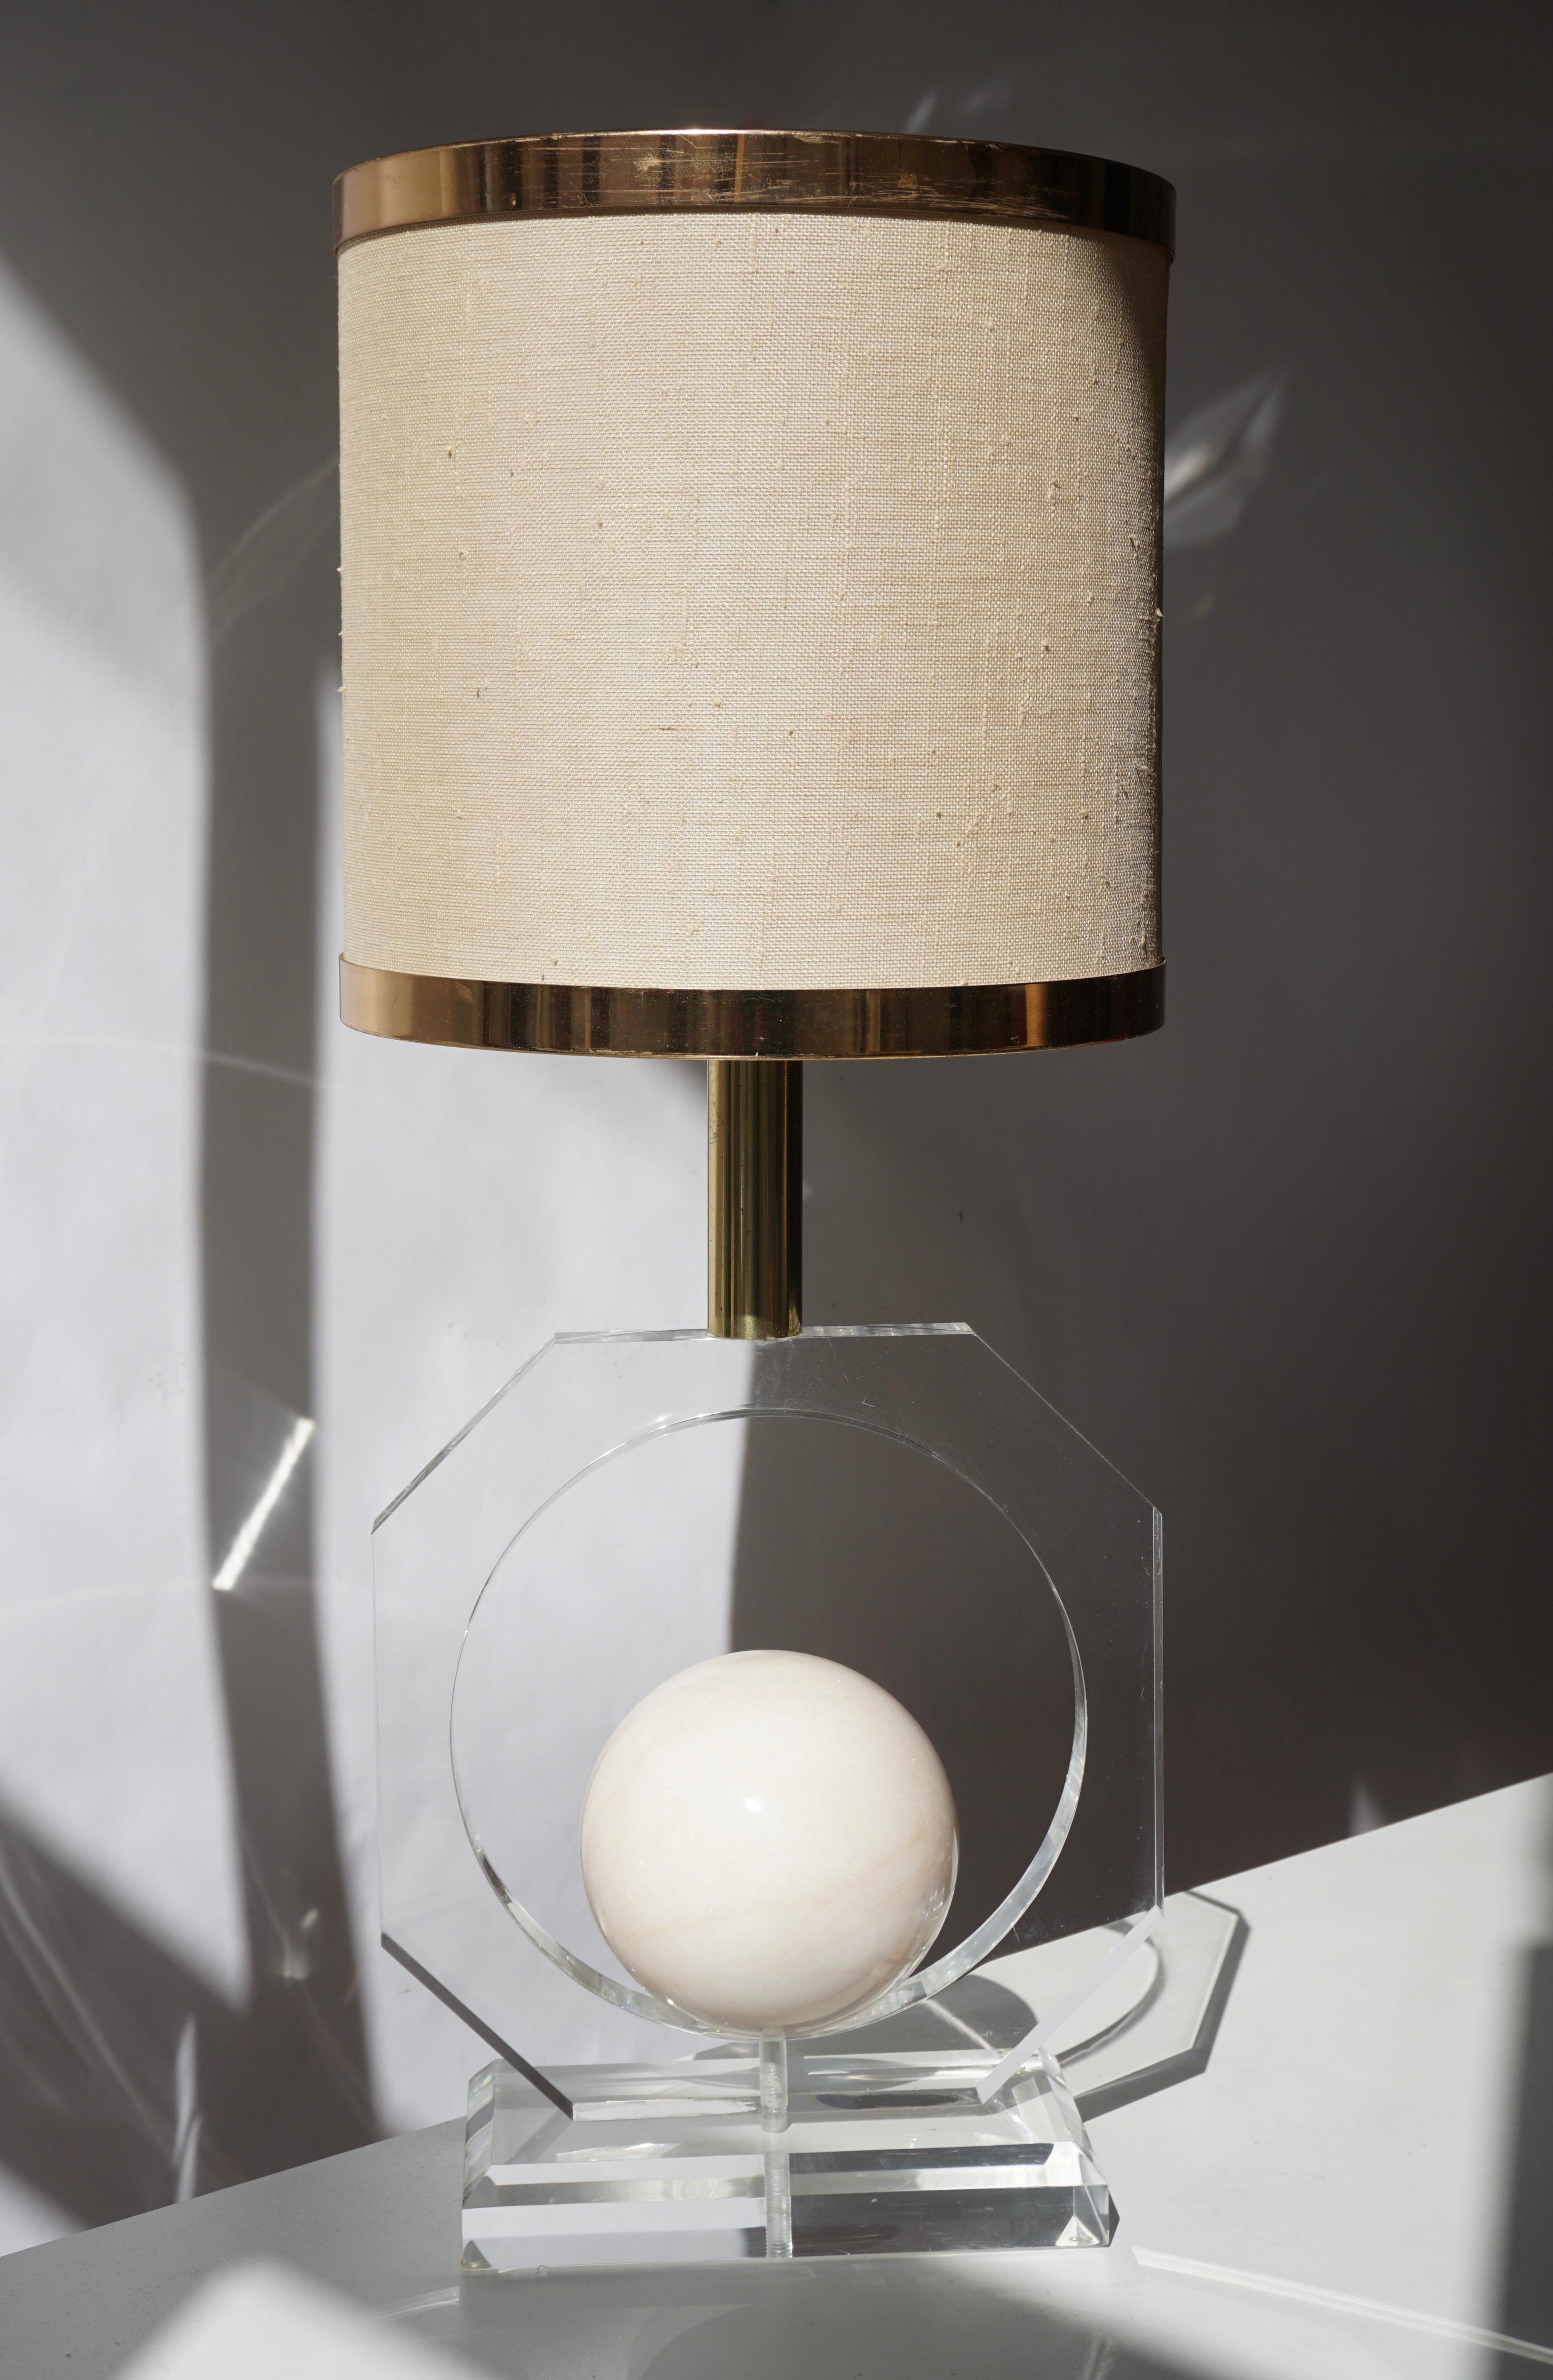 Lampe de table en plexiglas avec une sphère ronde en marbre au centre.
Mesures : Hauteur 63 cm.
Diamètre 26 cm.